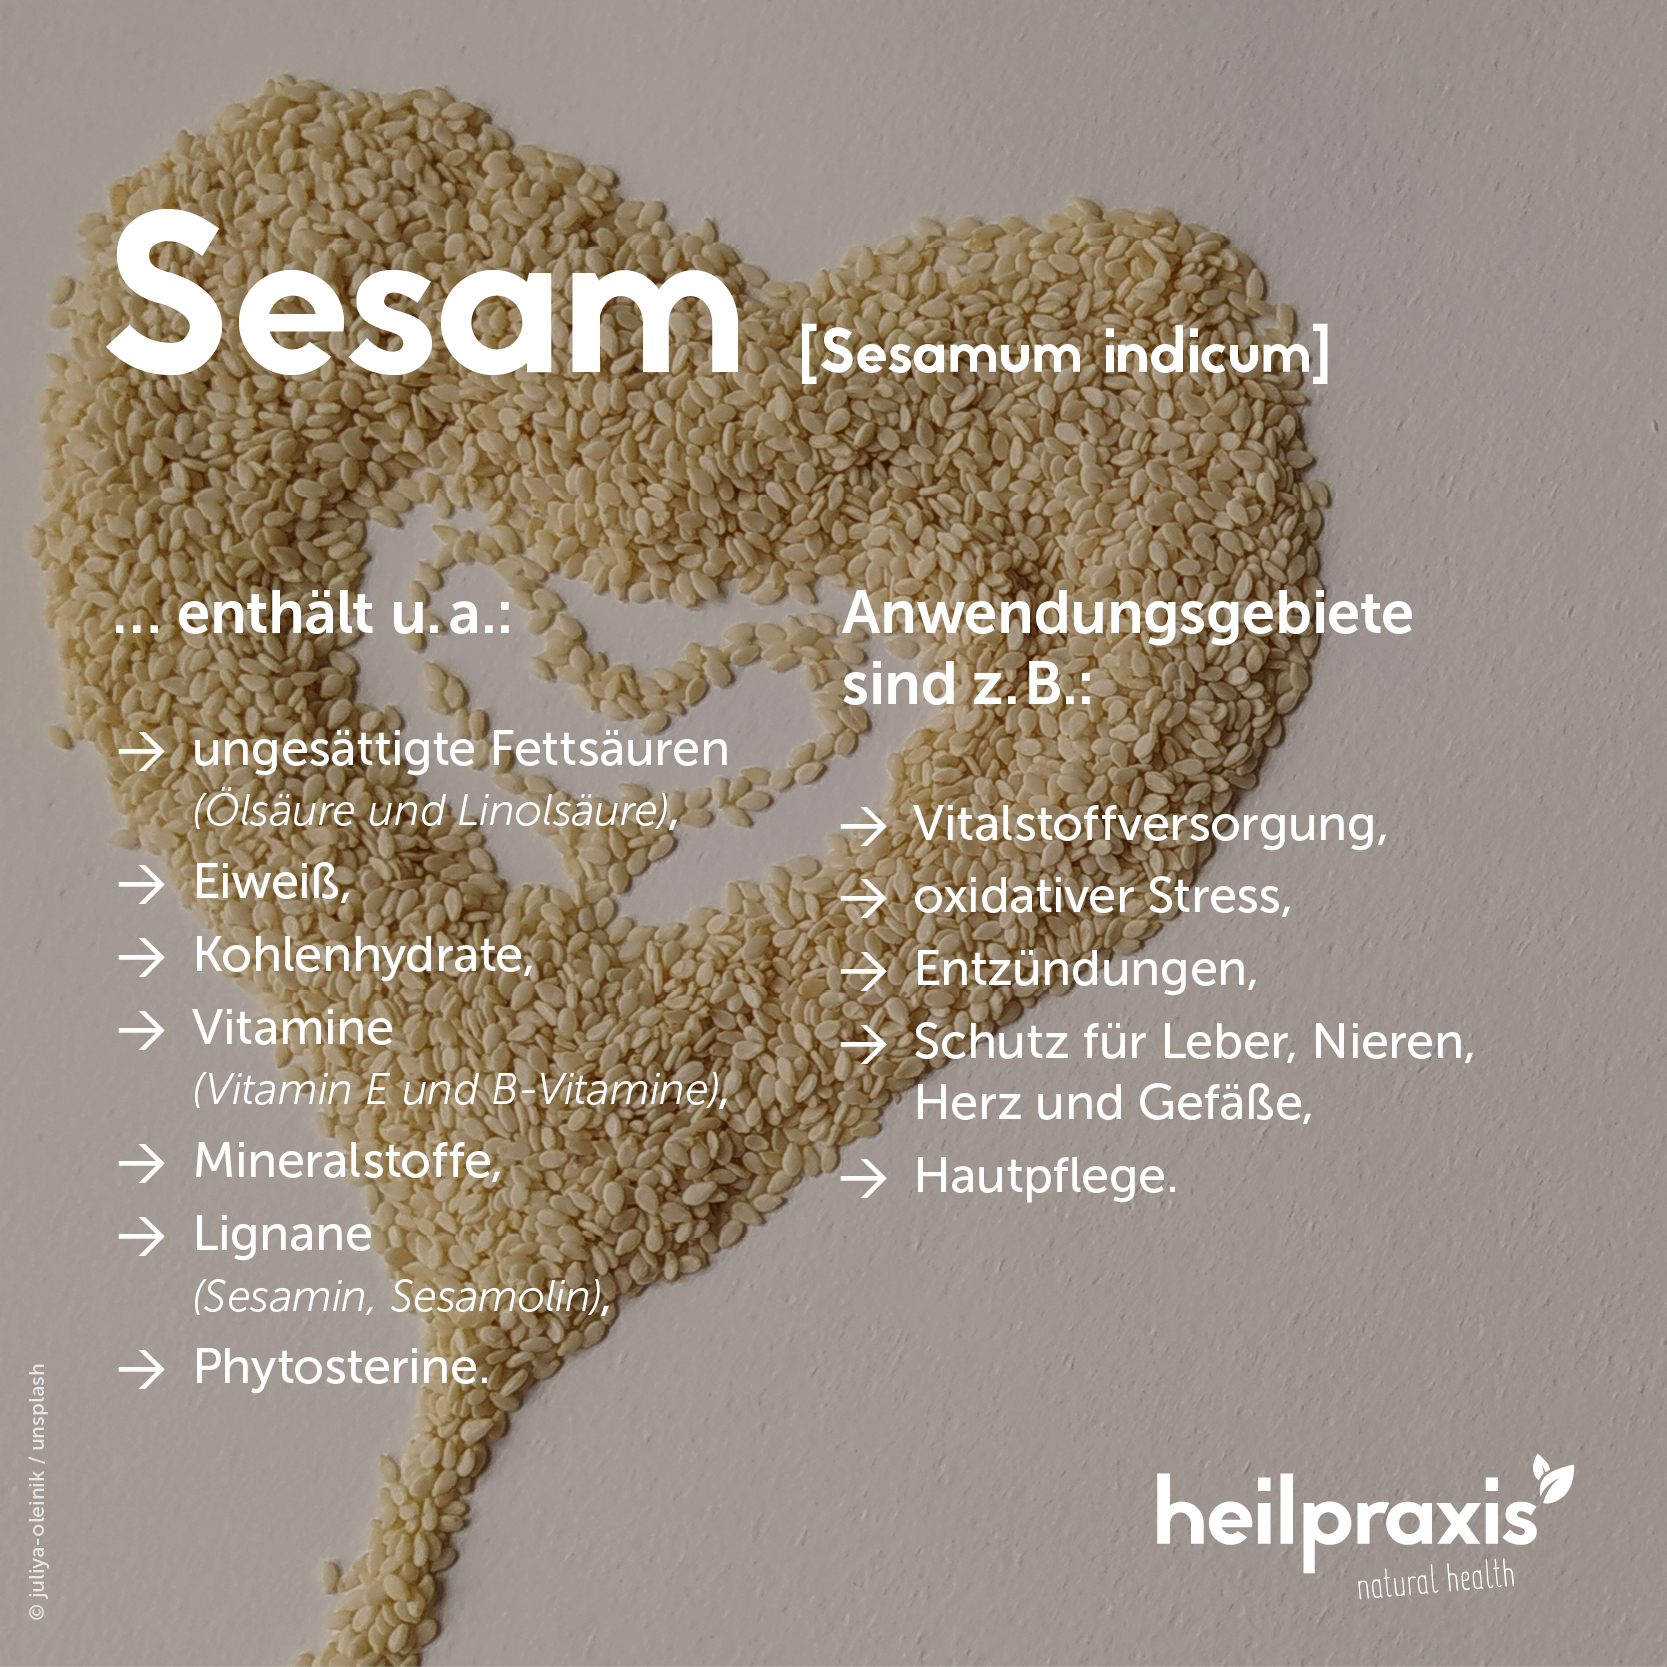 Übersichtsgrafik der Inhaltsstoffe und Anwendung von Sesam